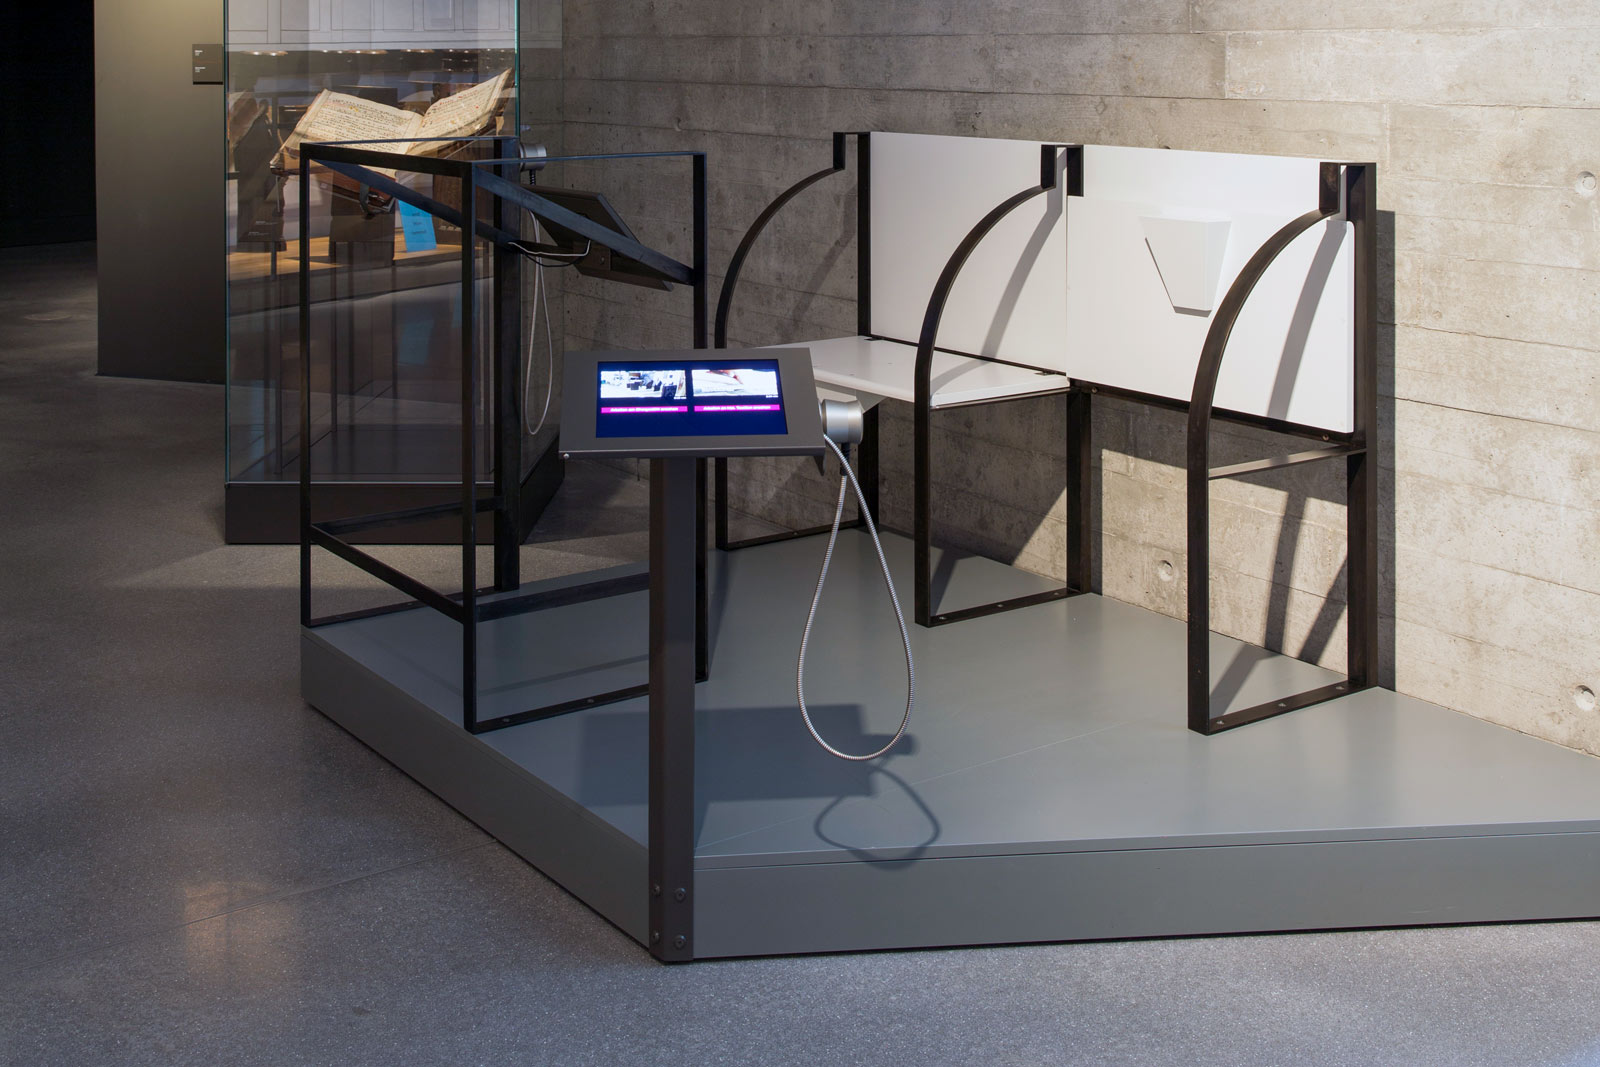 Das Referenzbild für Ausstellungsgestaltung aus der Dauerausstellung Grenze zeigt eine barrierefreie Medienstation.